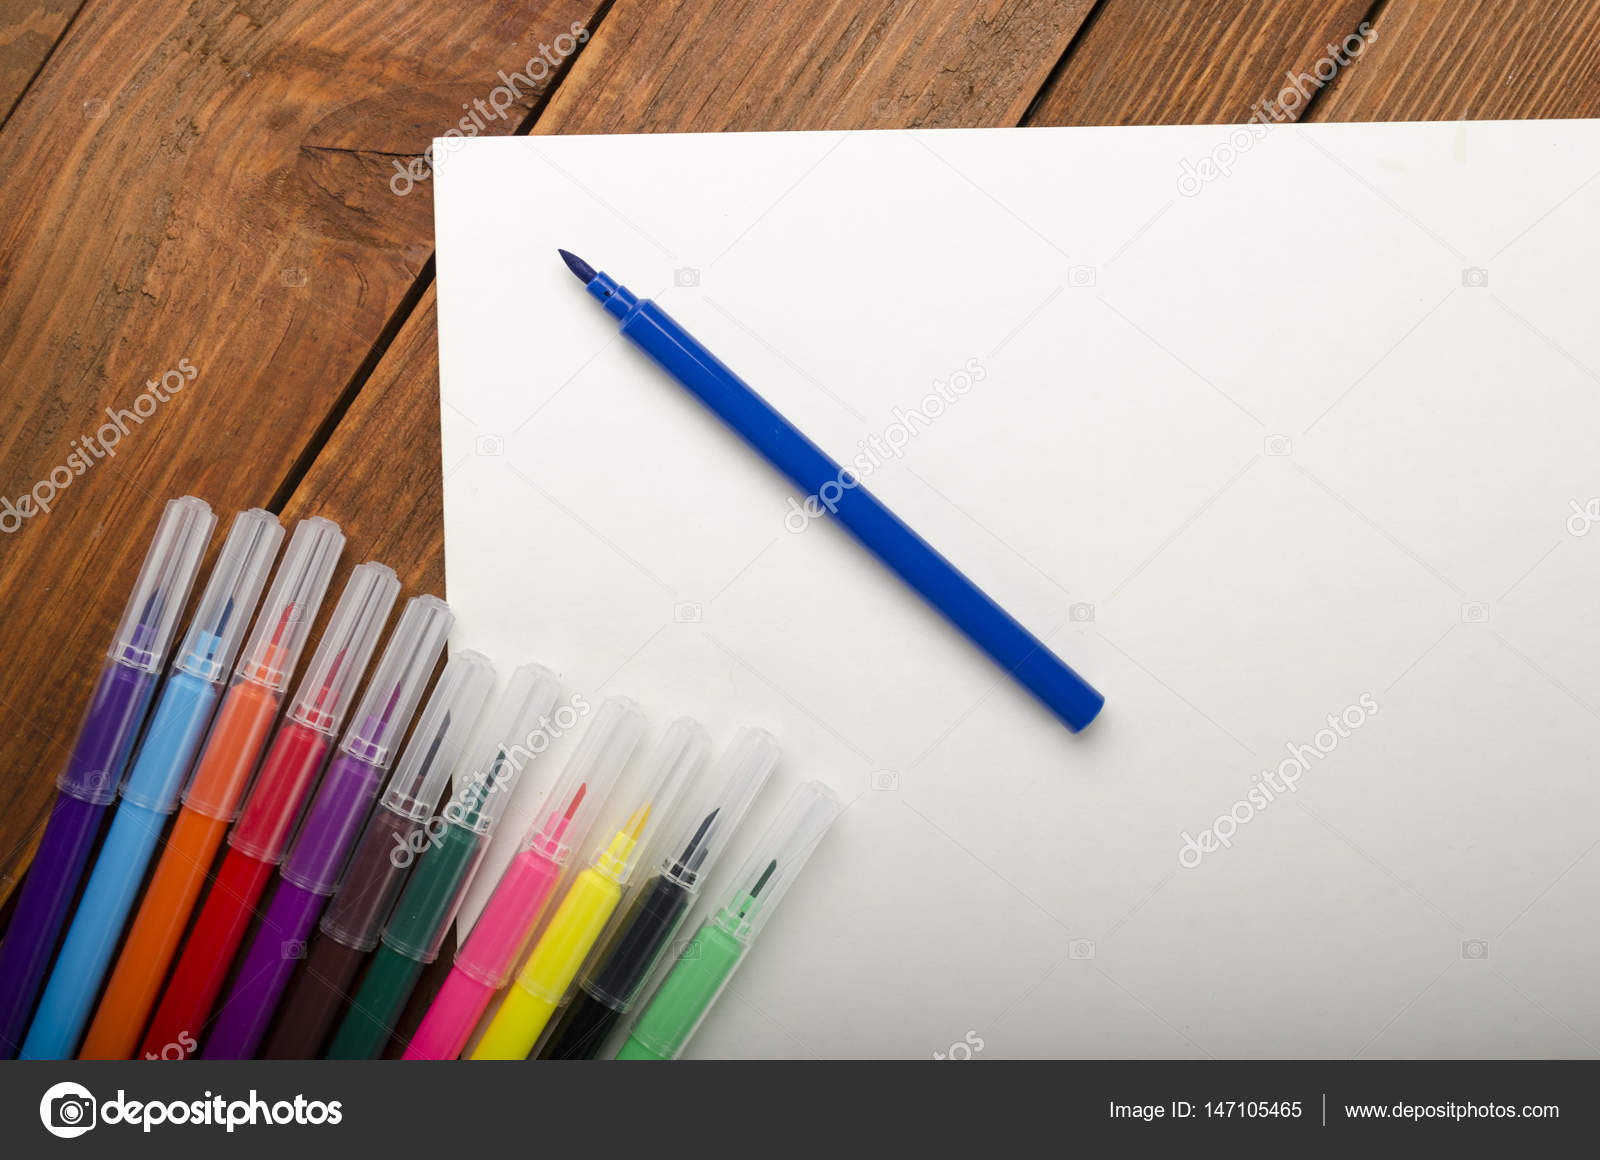 Цветные маркеры для рисования — Стоковое фото © NcikName #147105465